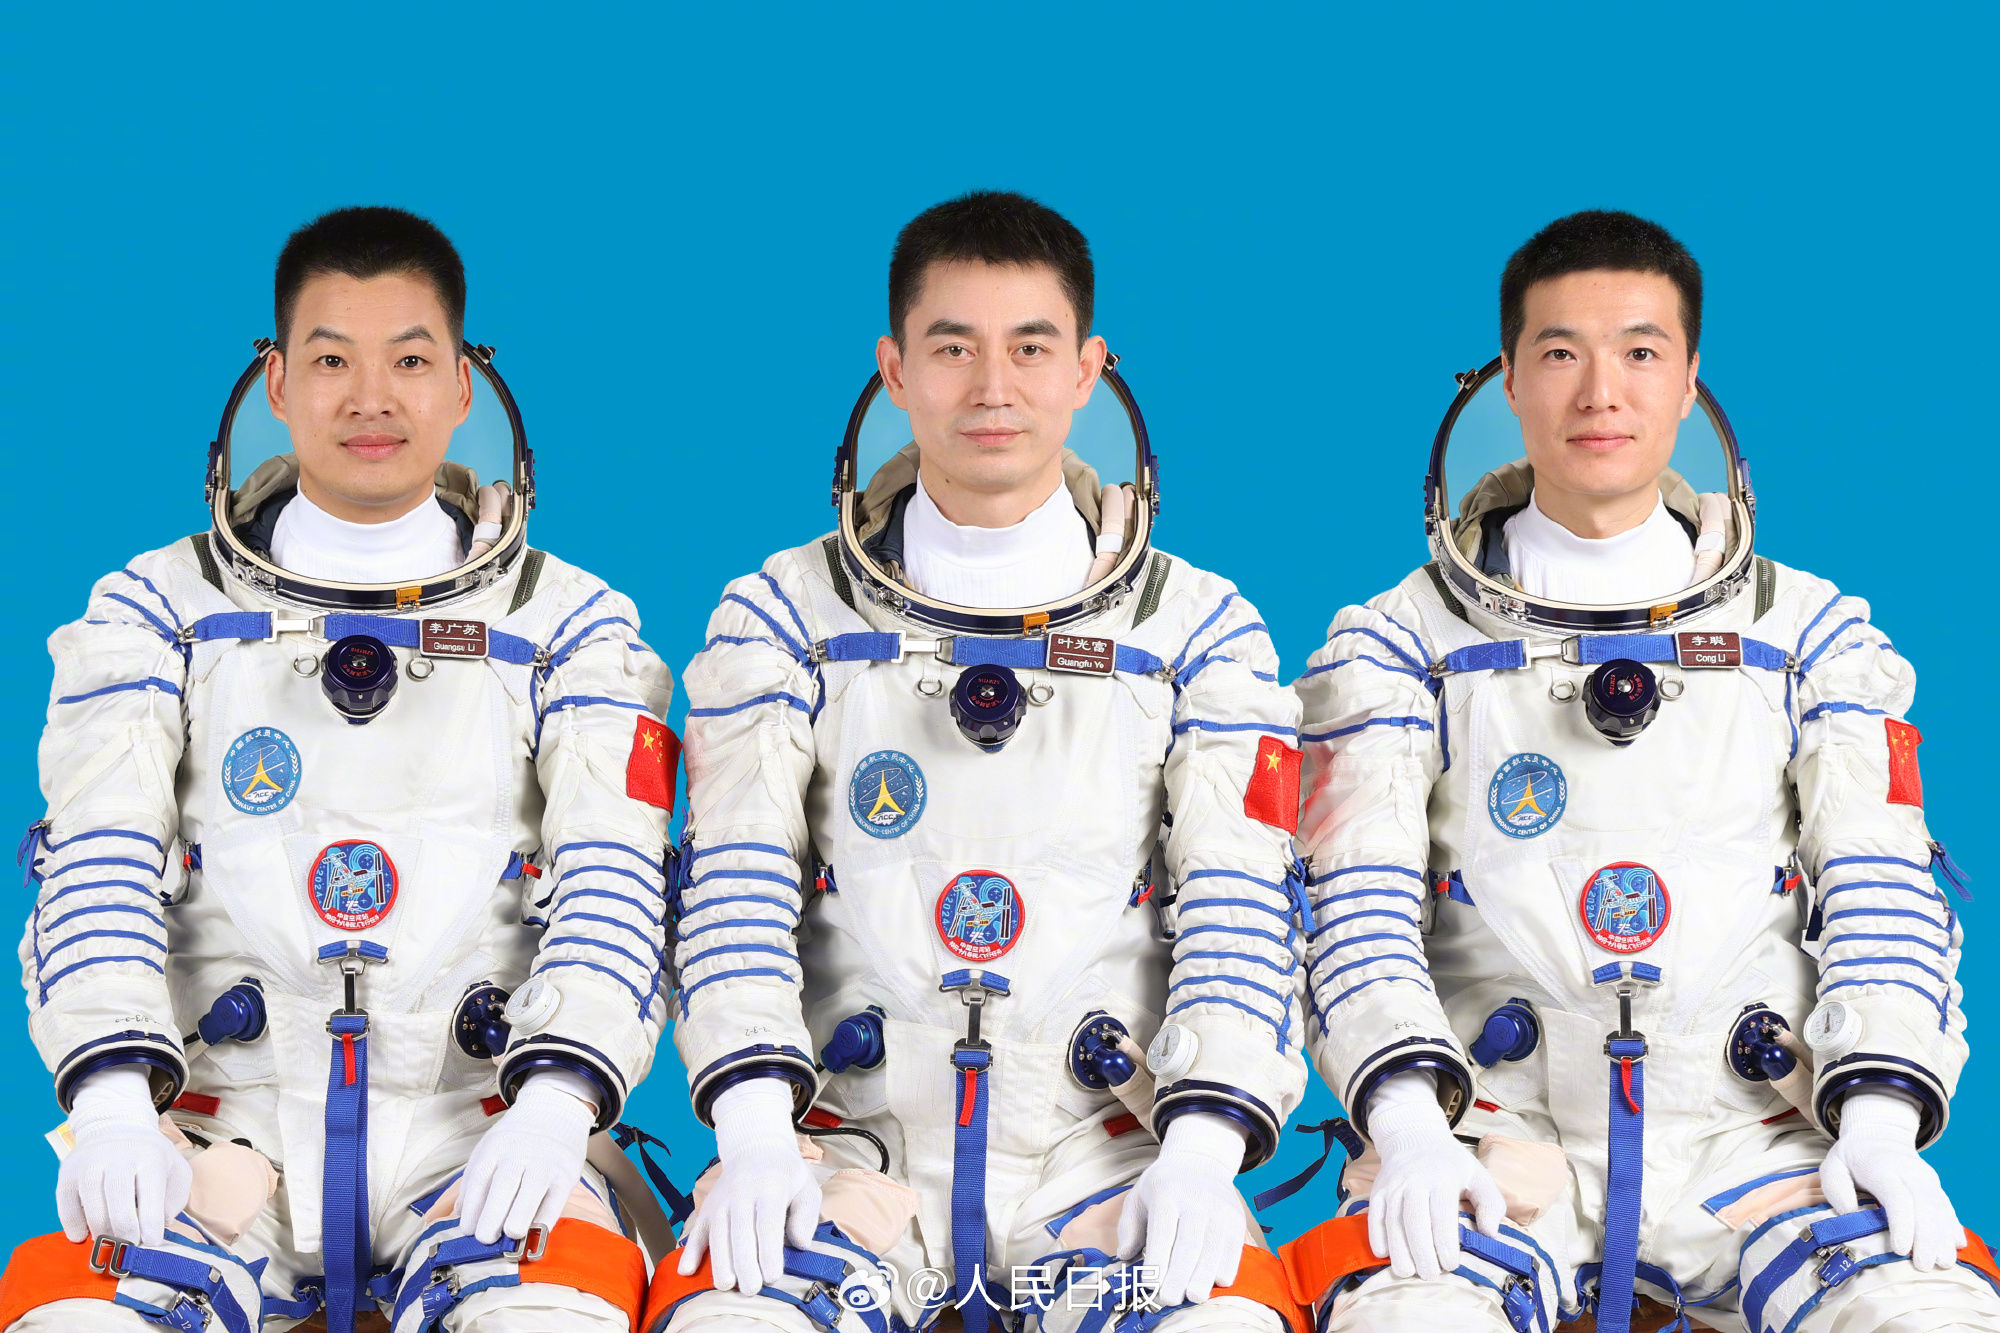 舟十八號航天員乘組由葉光富（中）、李聰（右）、李廣蘇（左）3名航天員組成。圖/取自人民日報